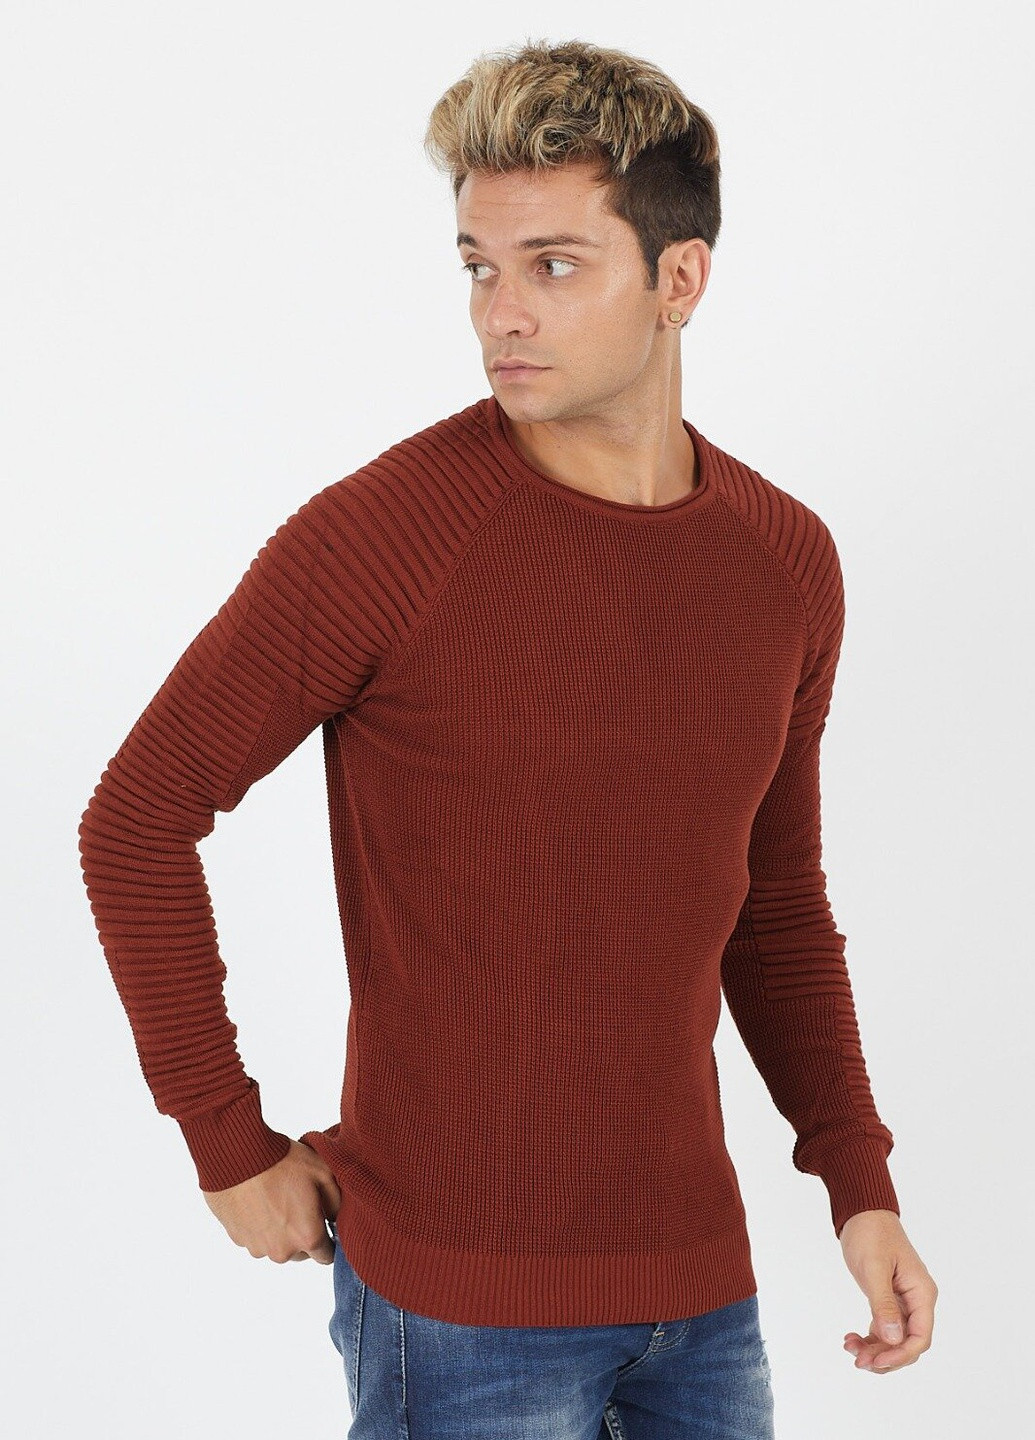 Терракотовый демисезонный свитер 6397 xl (52) терракотовый (2000903549376) Figo